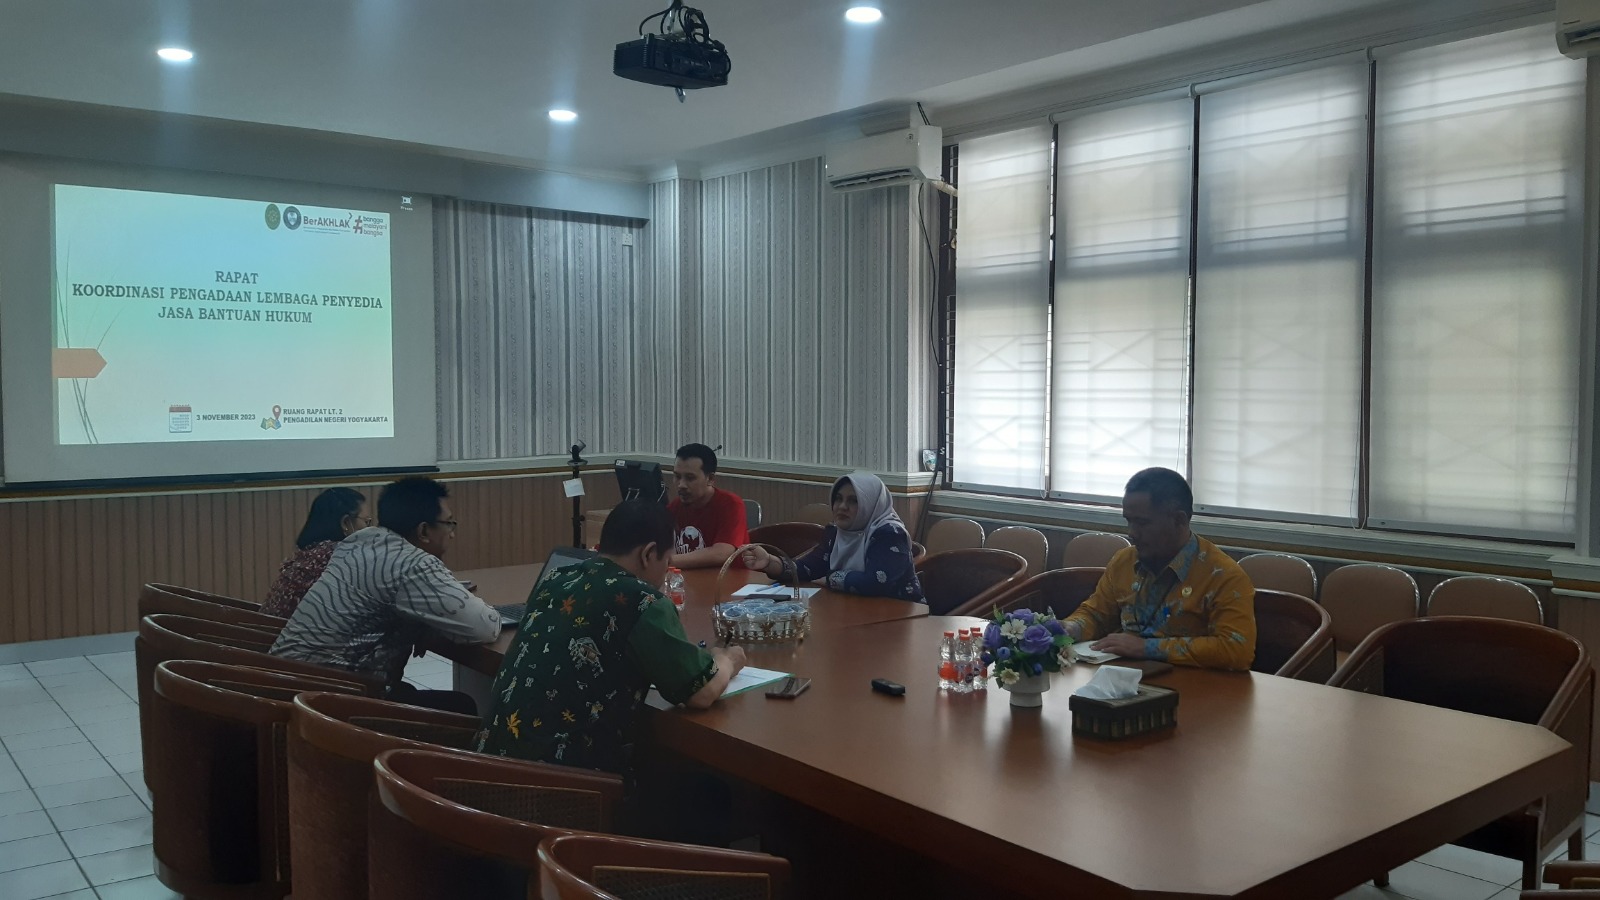 Rapat Koordinasi Pengadaan Lembaga Penyedia Jasa Bantuan Hukum Pengadilan Negeri Yogyakarta